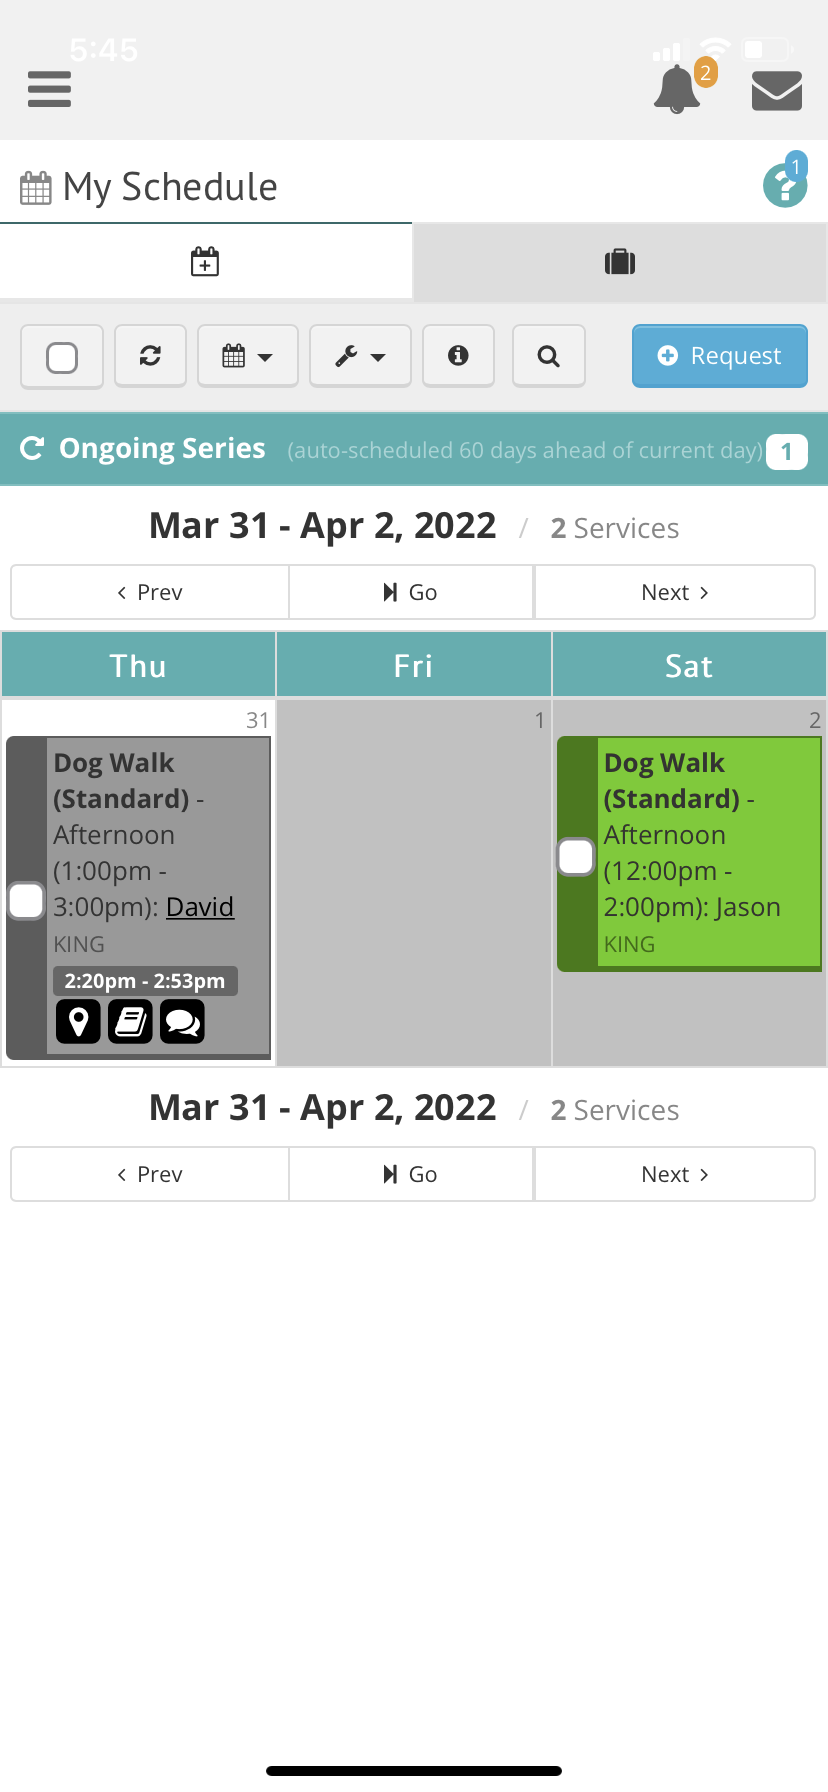 Dog walking app image 3